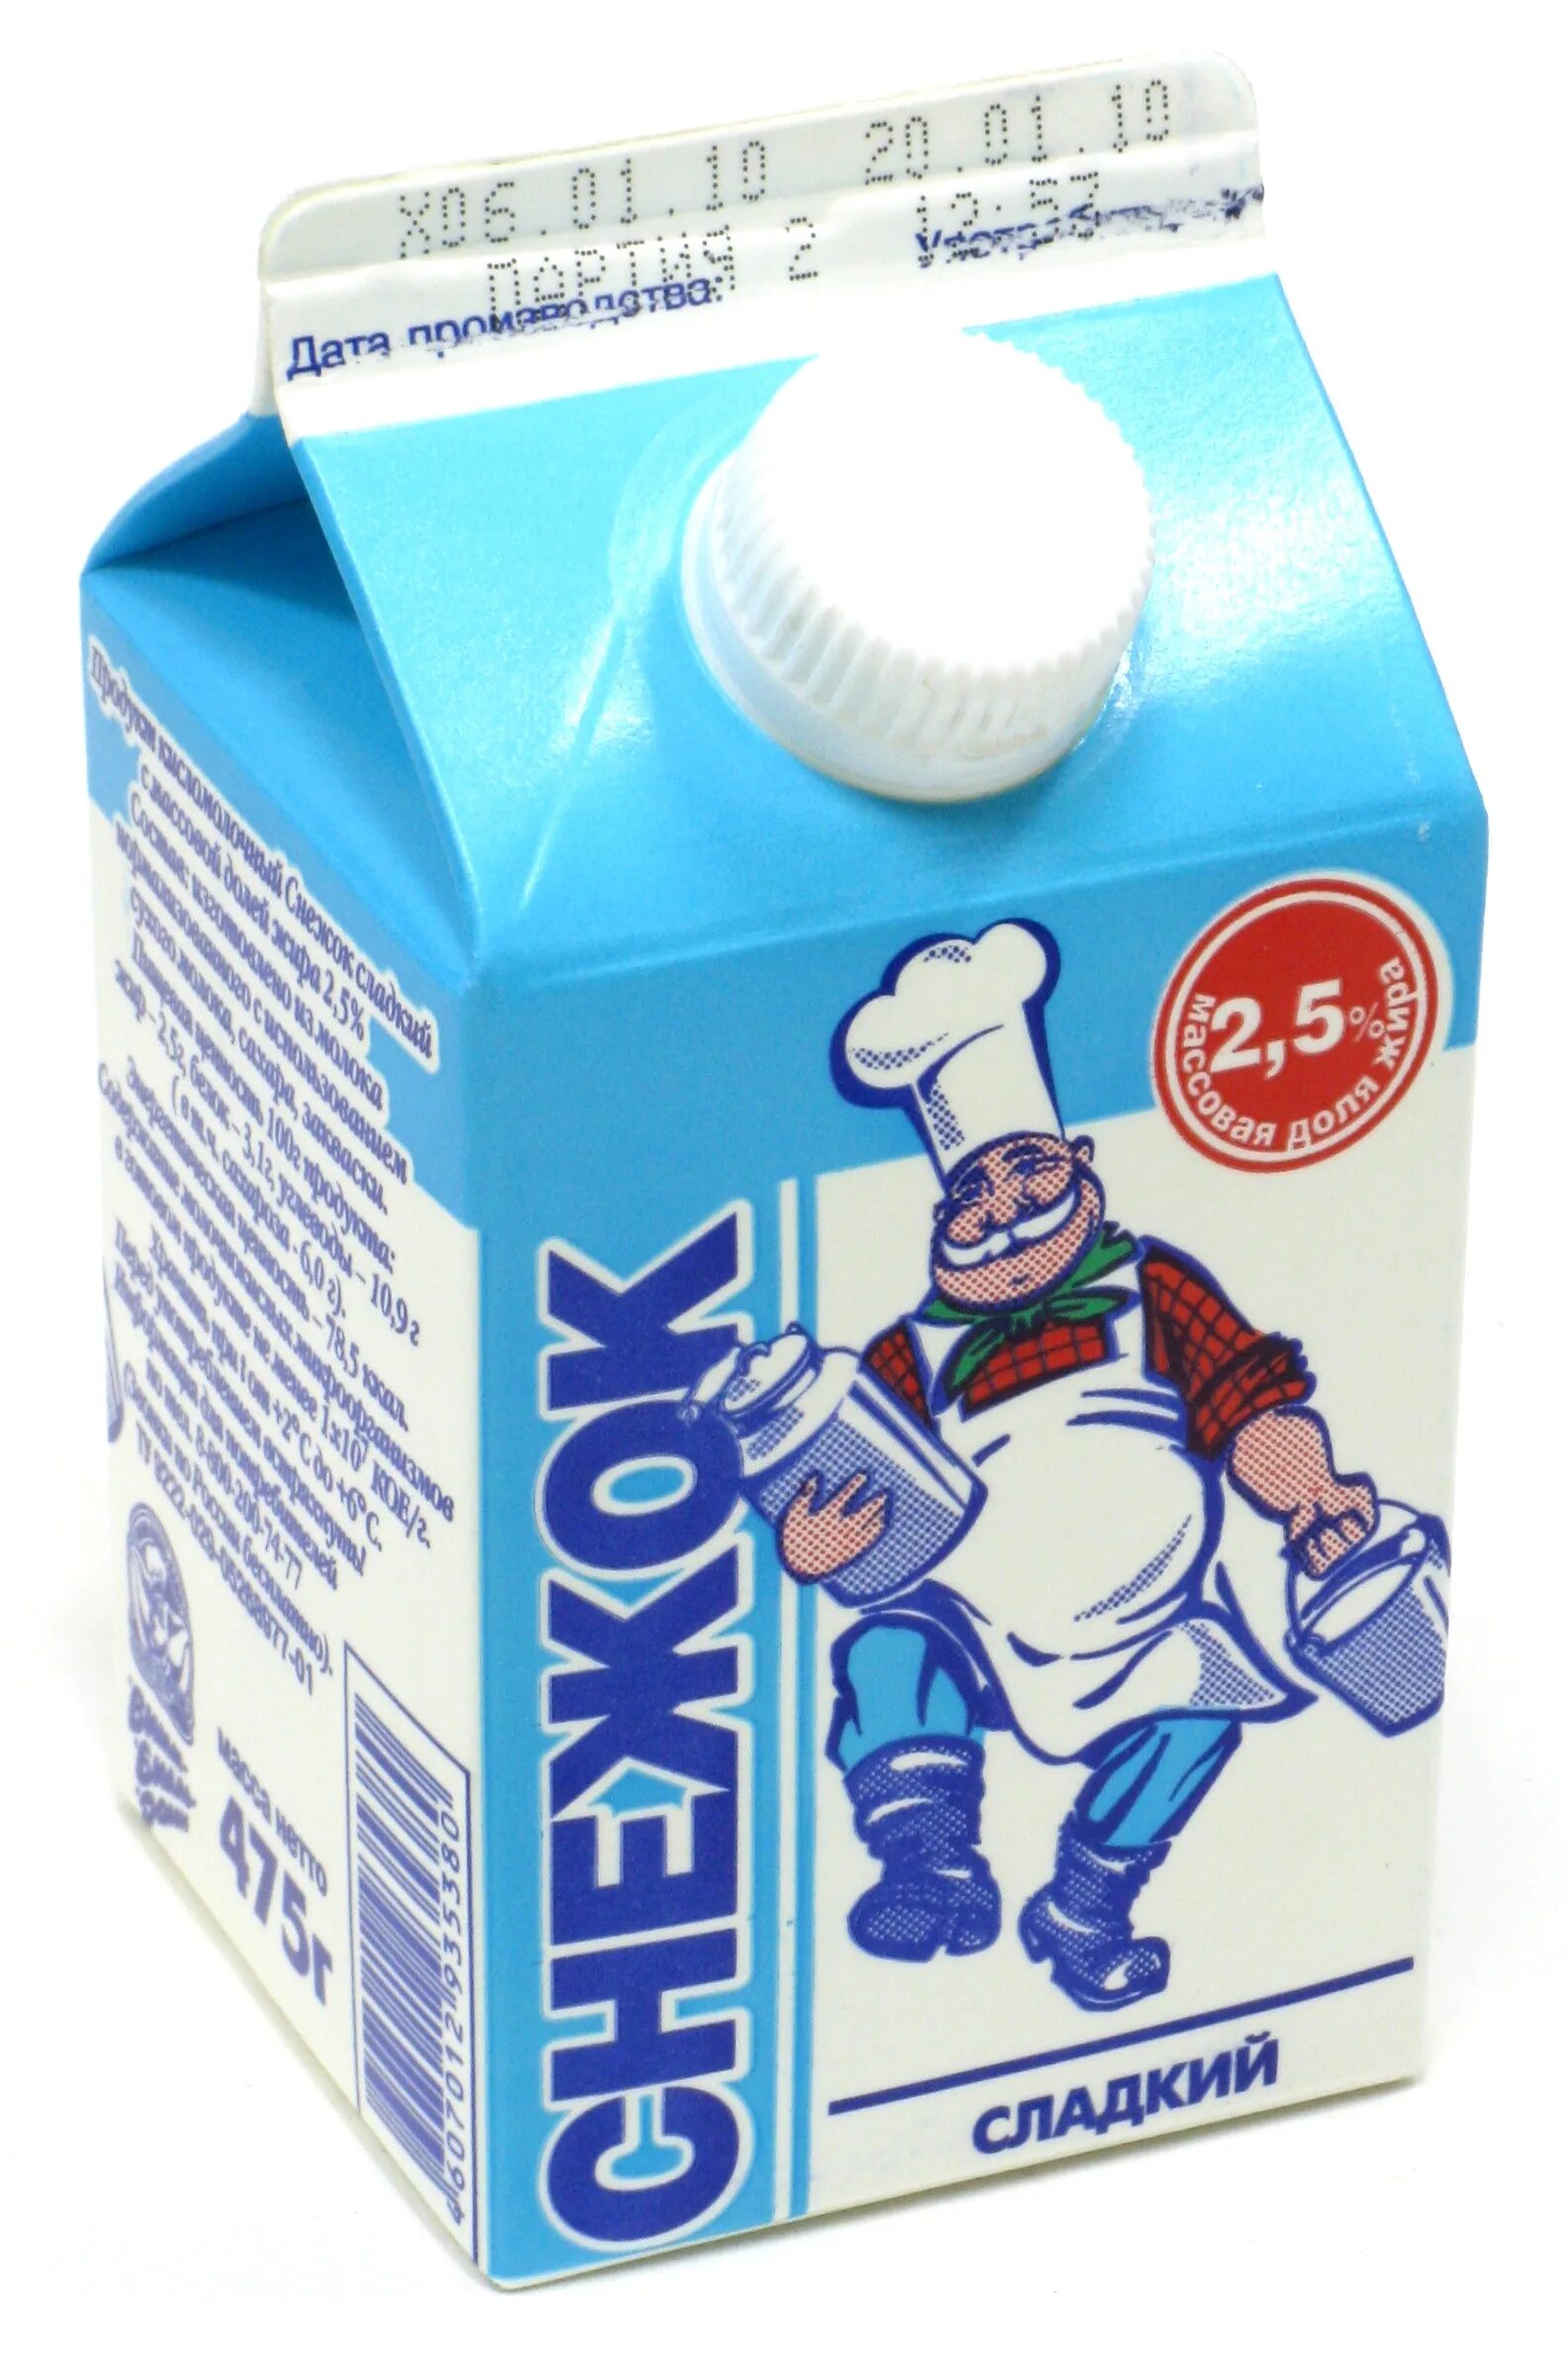 Снежок пришел. Молоко веселый молочник. Творожный сырок веселый молочник. Ряженка веселый молочник. Снежок веселый молочник.